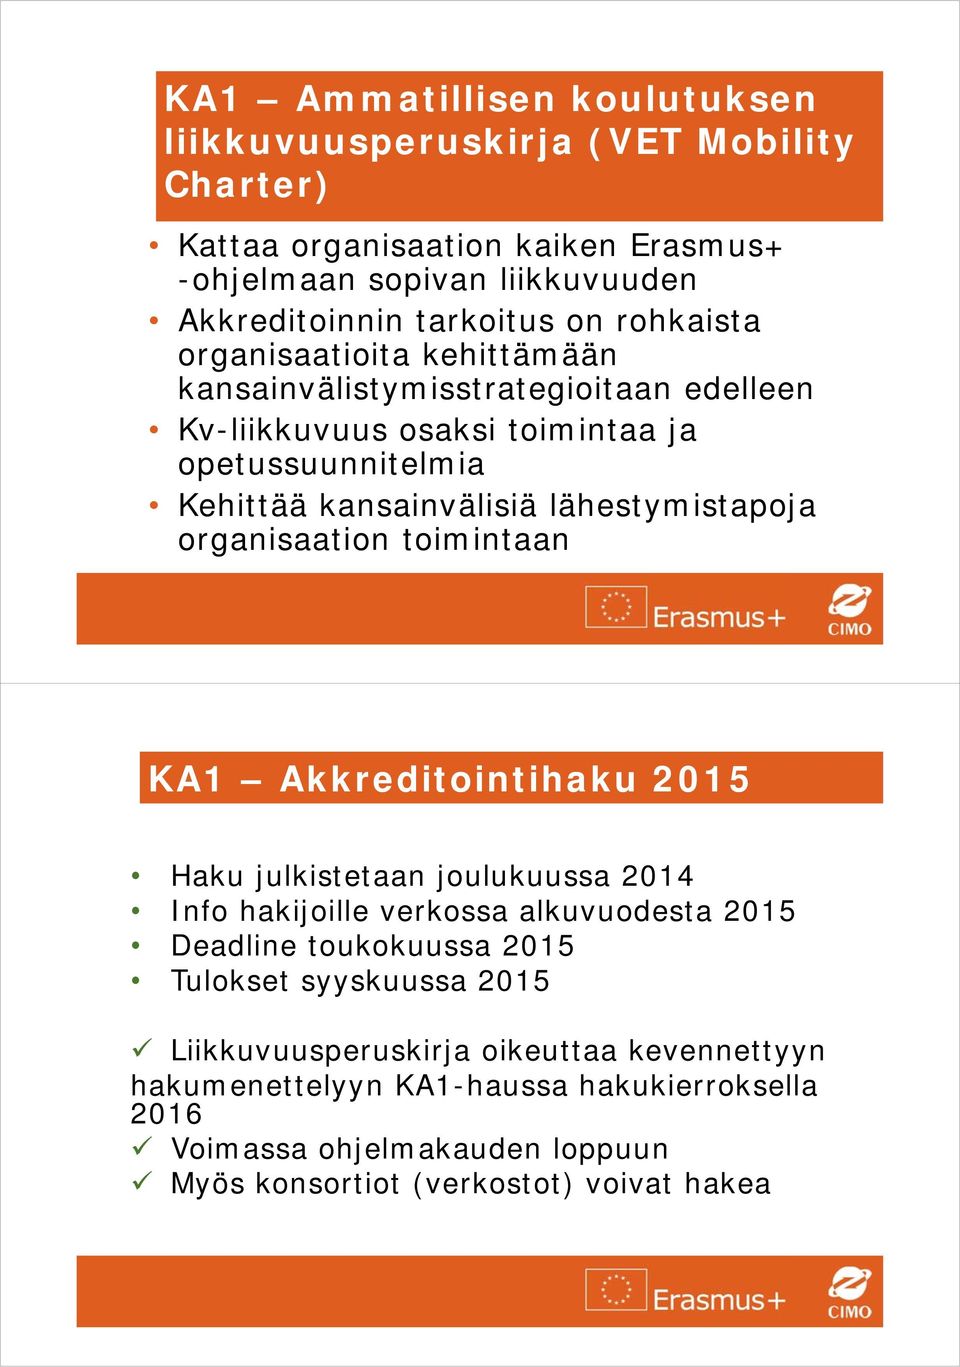 lähestymistapoja organisaation toimintaan KA1 Akkreditointihaku 2015 Haku julkistetaan joulukuussa 2014 Info hakijoille verkossa alkuvuodesta 2015 Deadline toukokuussa